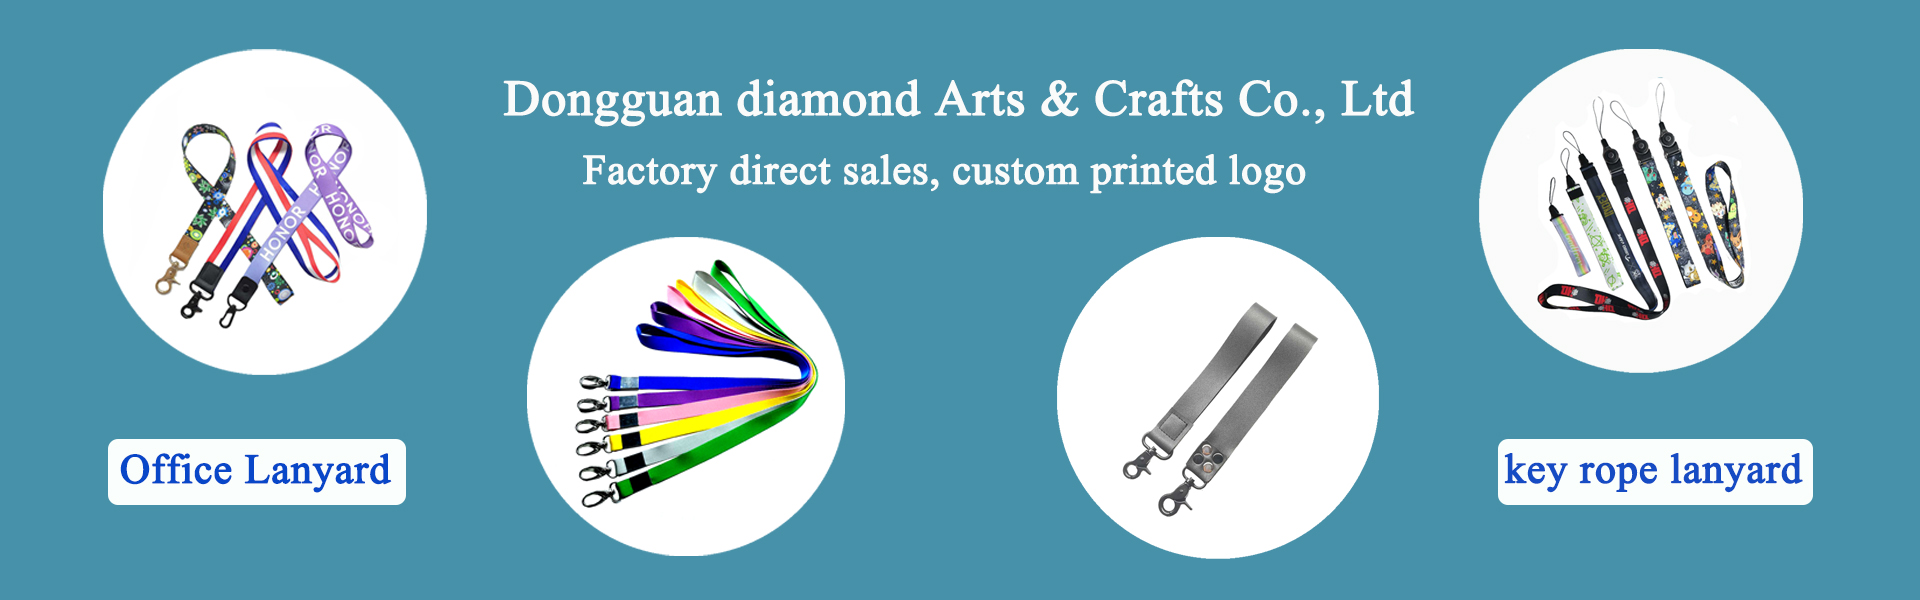 Câble, accessoires de vêtements, animaux de compagnie,Dongguan diamond Arts & Crafts Co., Ltd